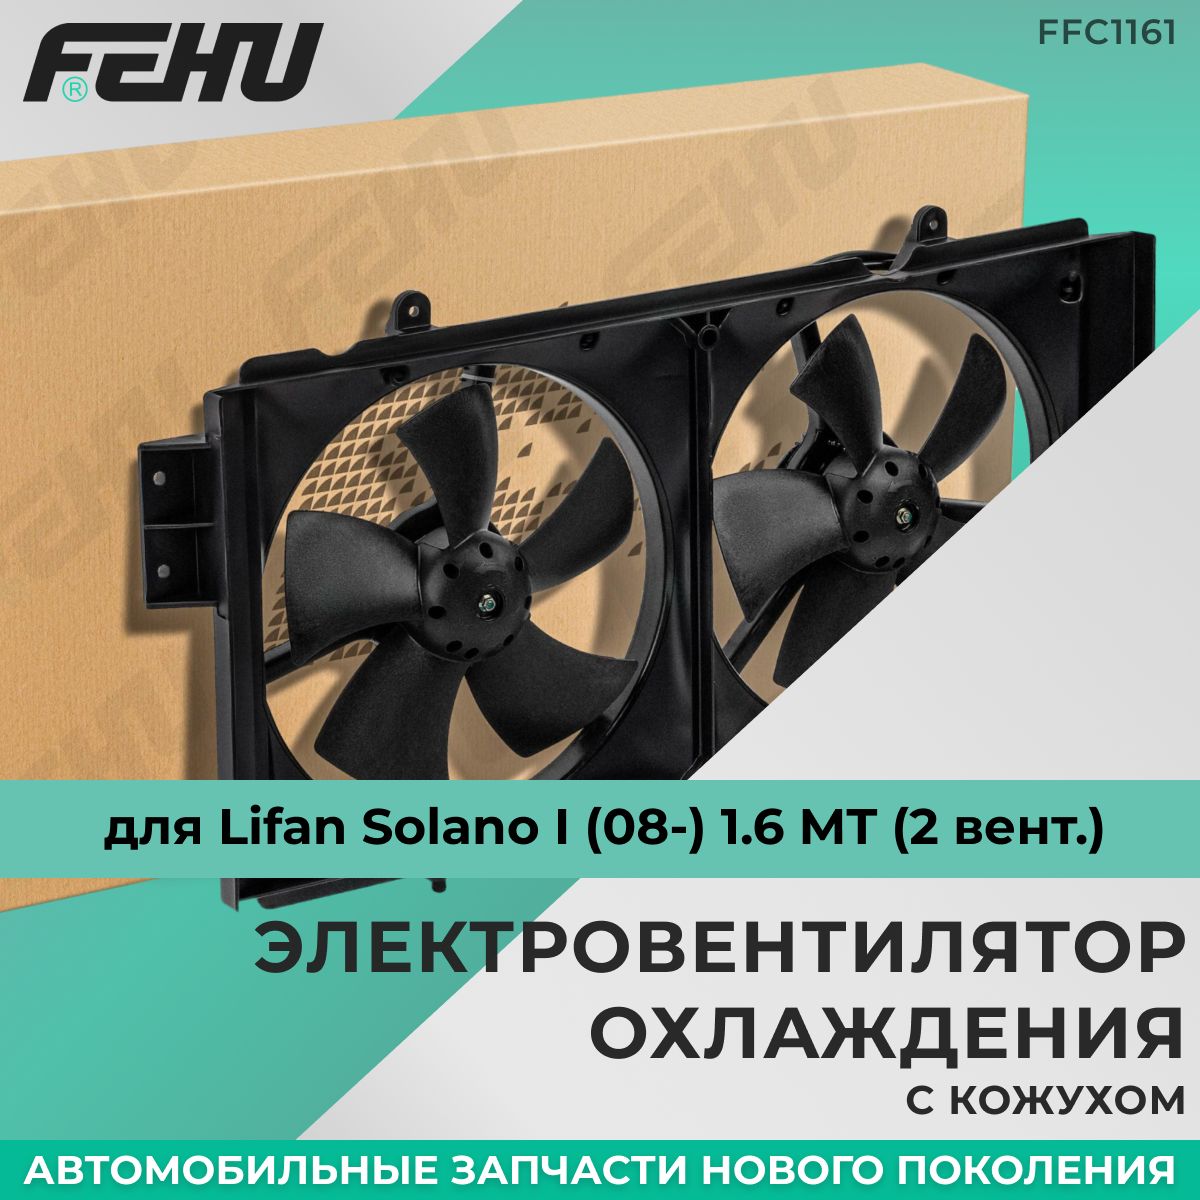 ЭлектровентиляторохлажденияFEHU(ФЕХУ),скожухом,LifanSolanoI(08-)1.6MT(2вент.),FFC1161